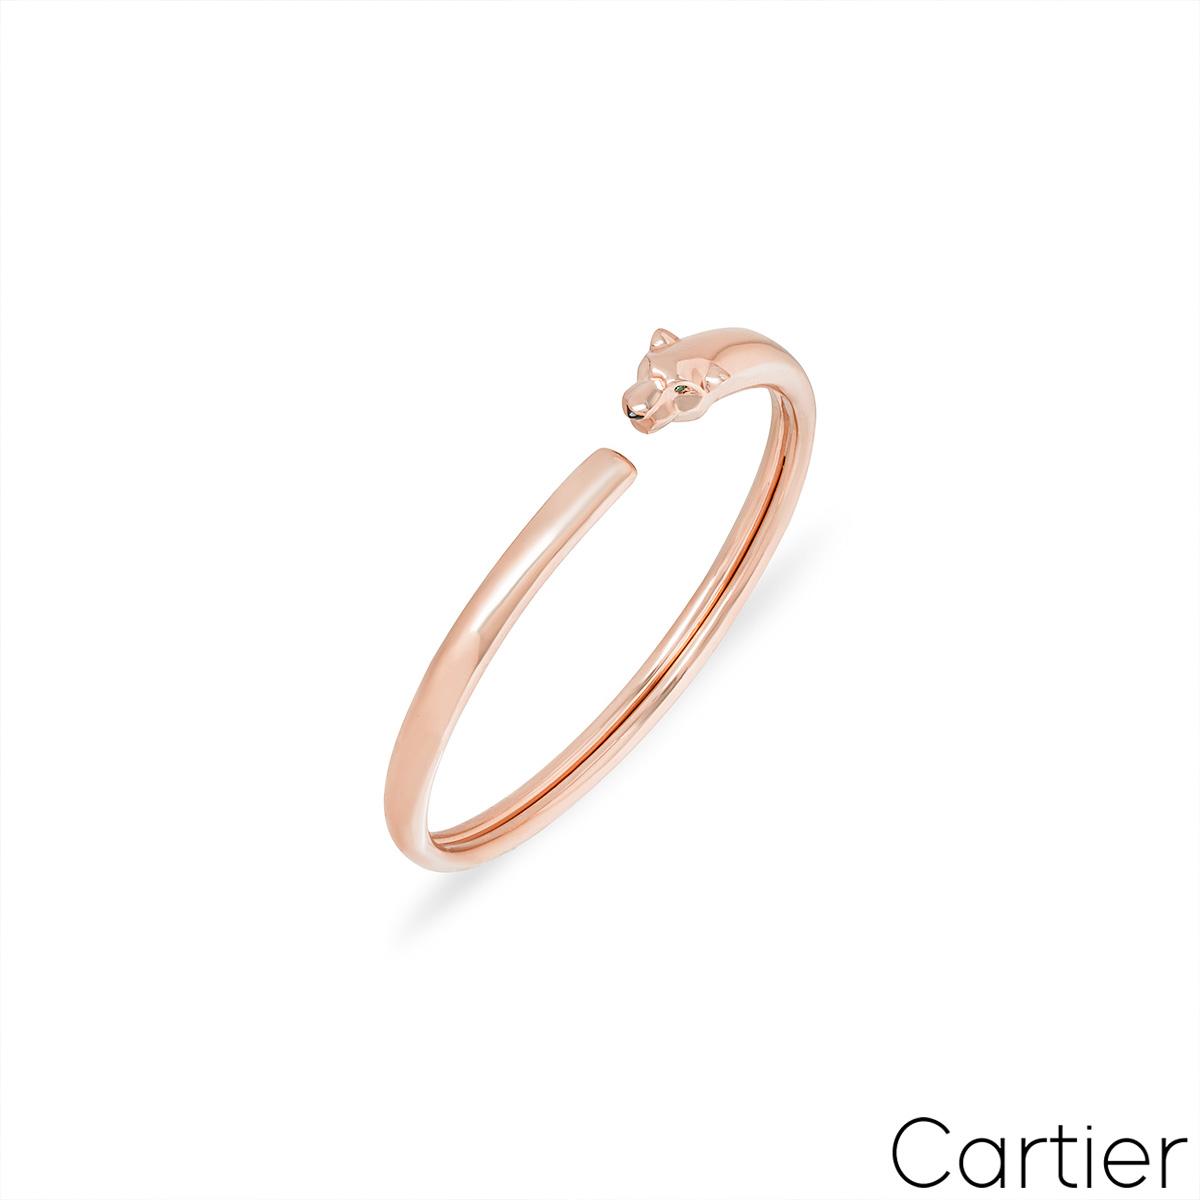 Cartier Rose Gold Panthere De Cartier Bracelet Size 16 B6067316